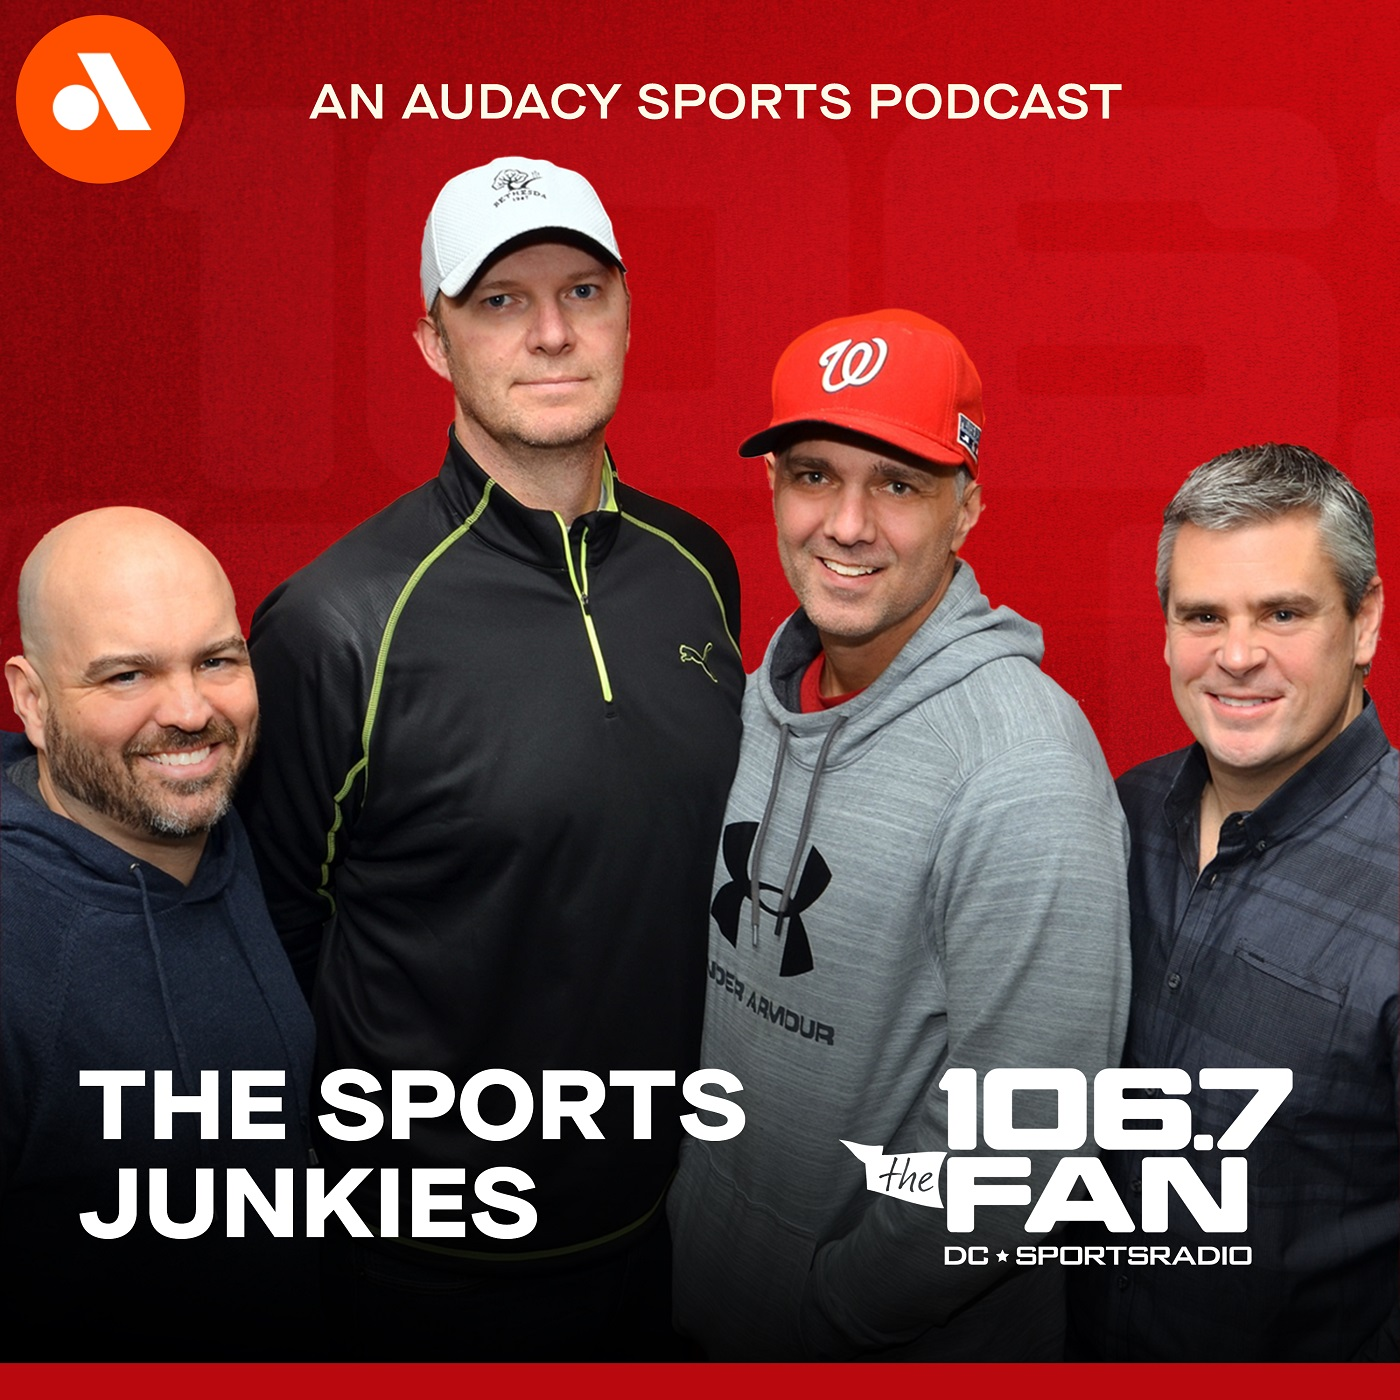 Sports Junkies 25th Anniversary Podcast: Junkies devastating kickball loss